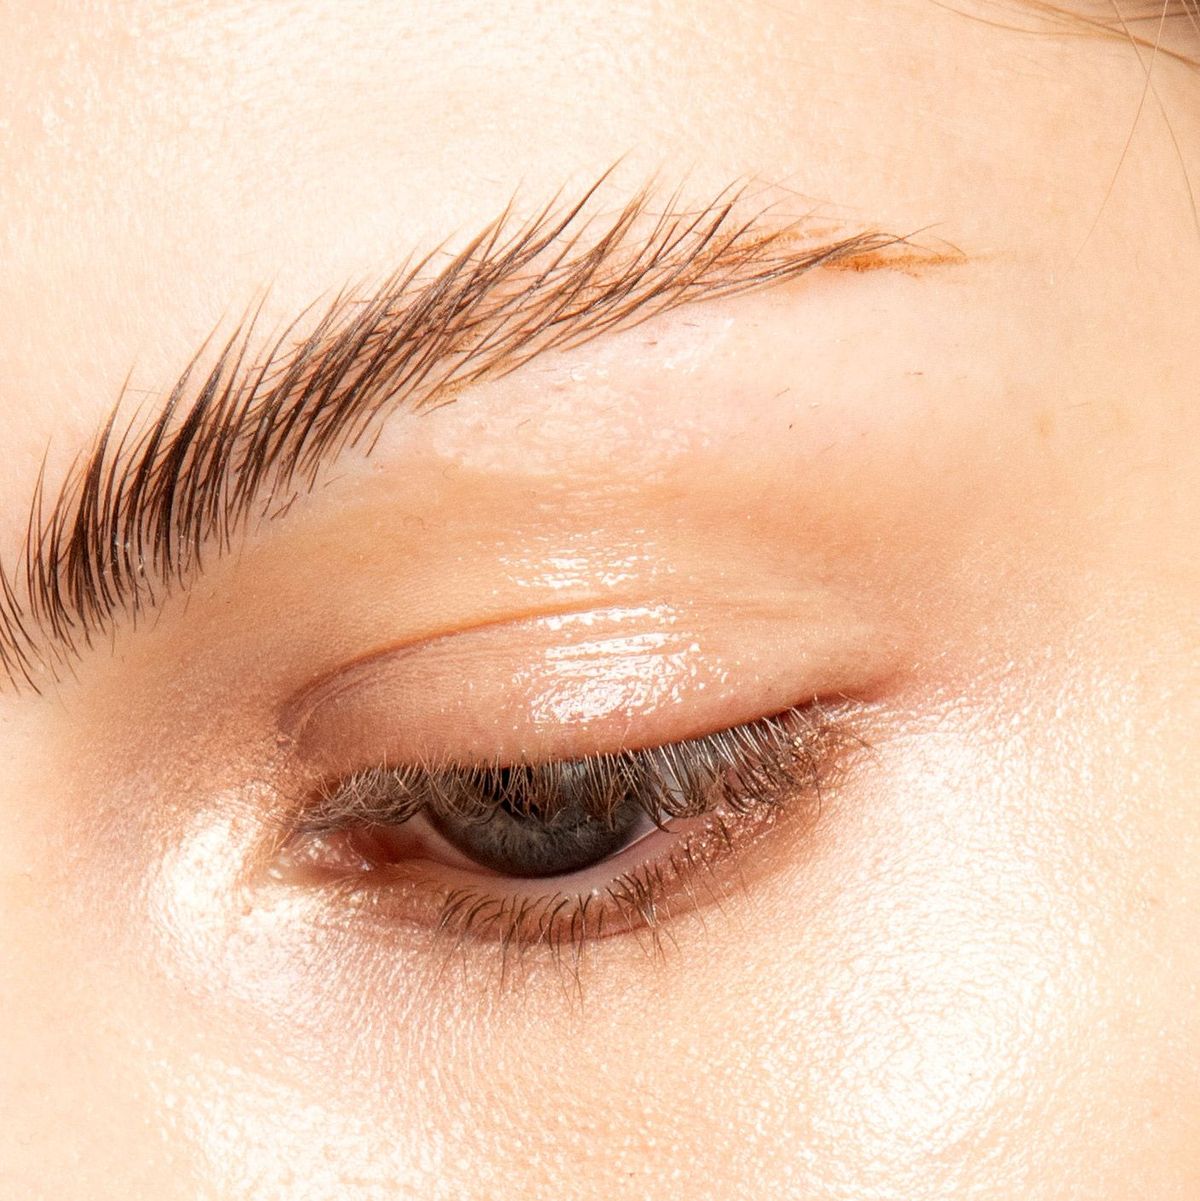 11 Best Eyebrow Wax Products 2022 - Eyebrow Shaping Wax Kits